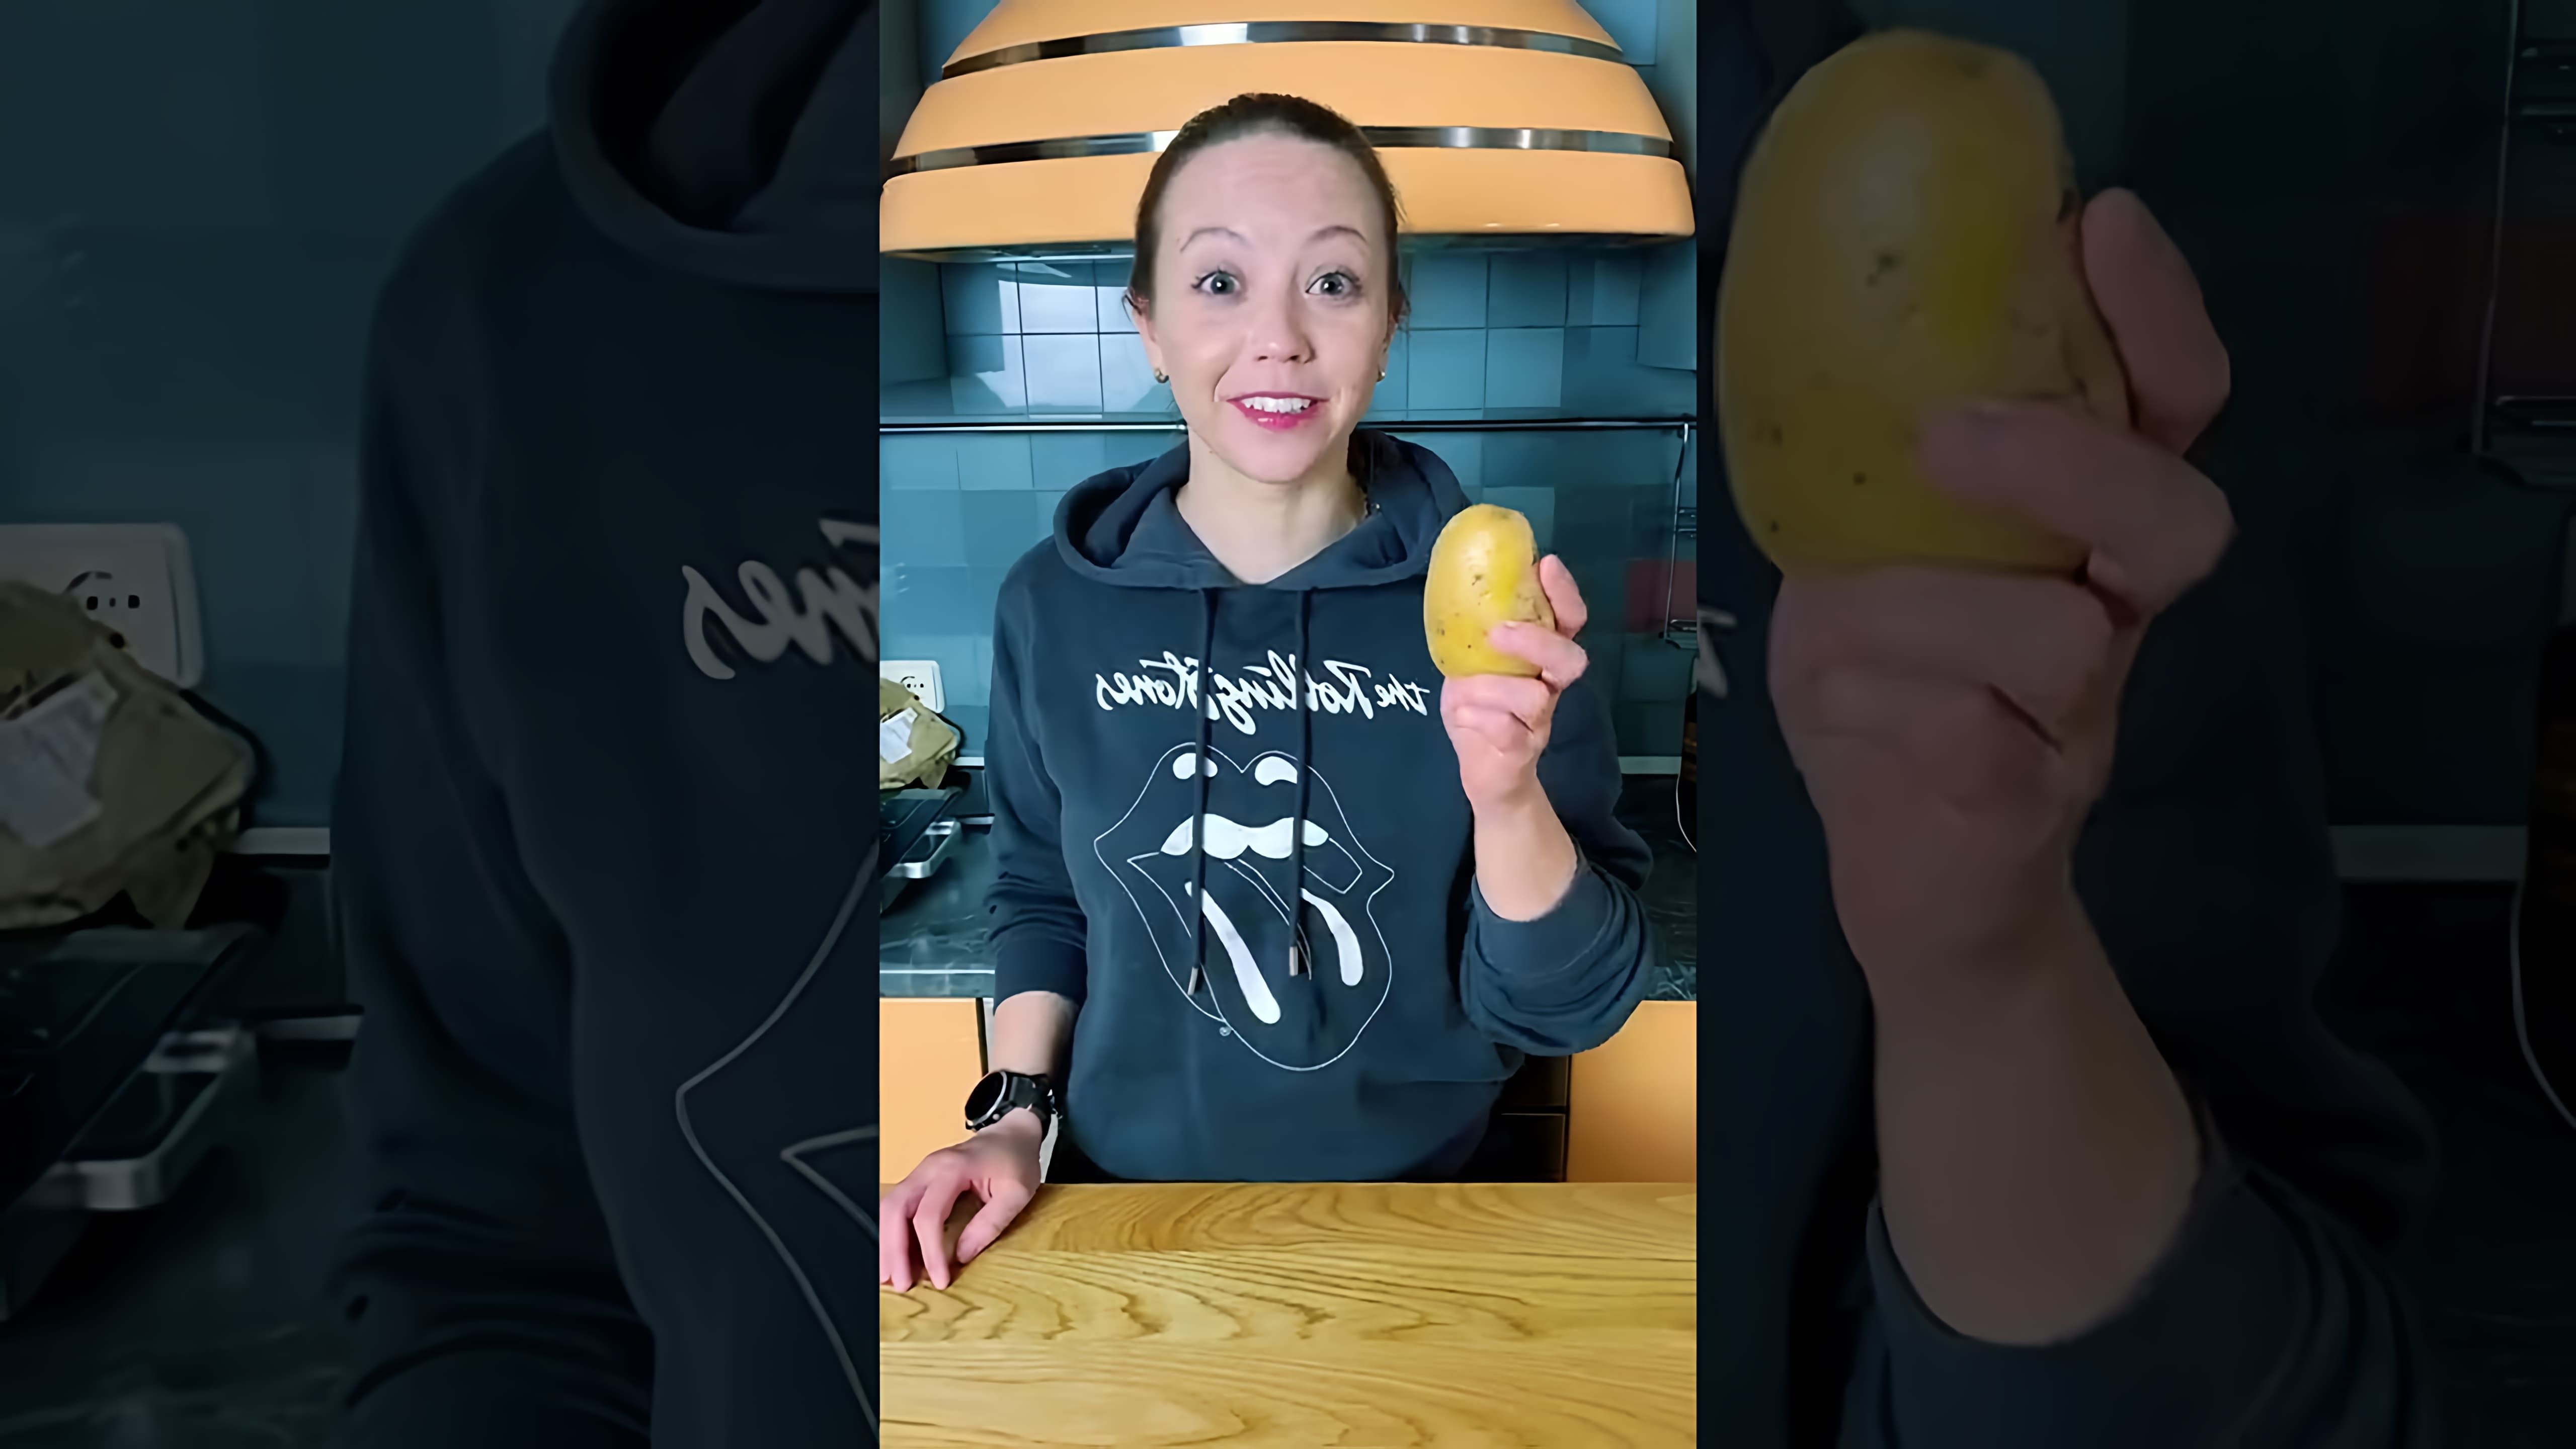 В этом видео демонстрируется процесс приготовления картошки фри, который позволяет получить блюдо, напоминающее по вкусу и текстуре картошку фри из Макдональдса